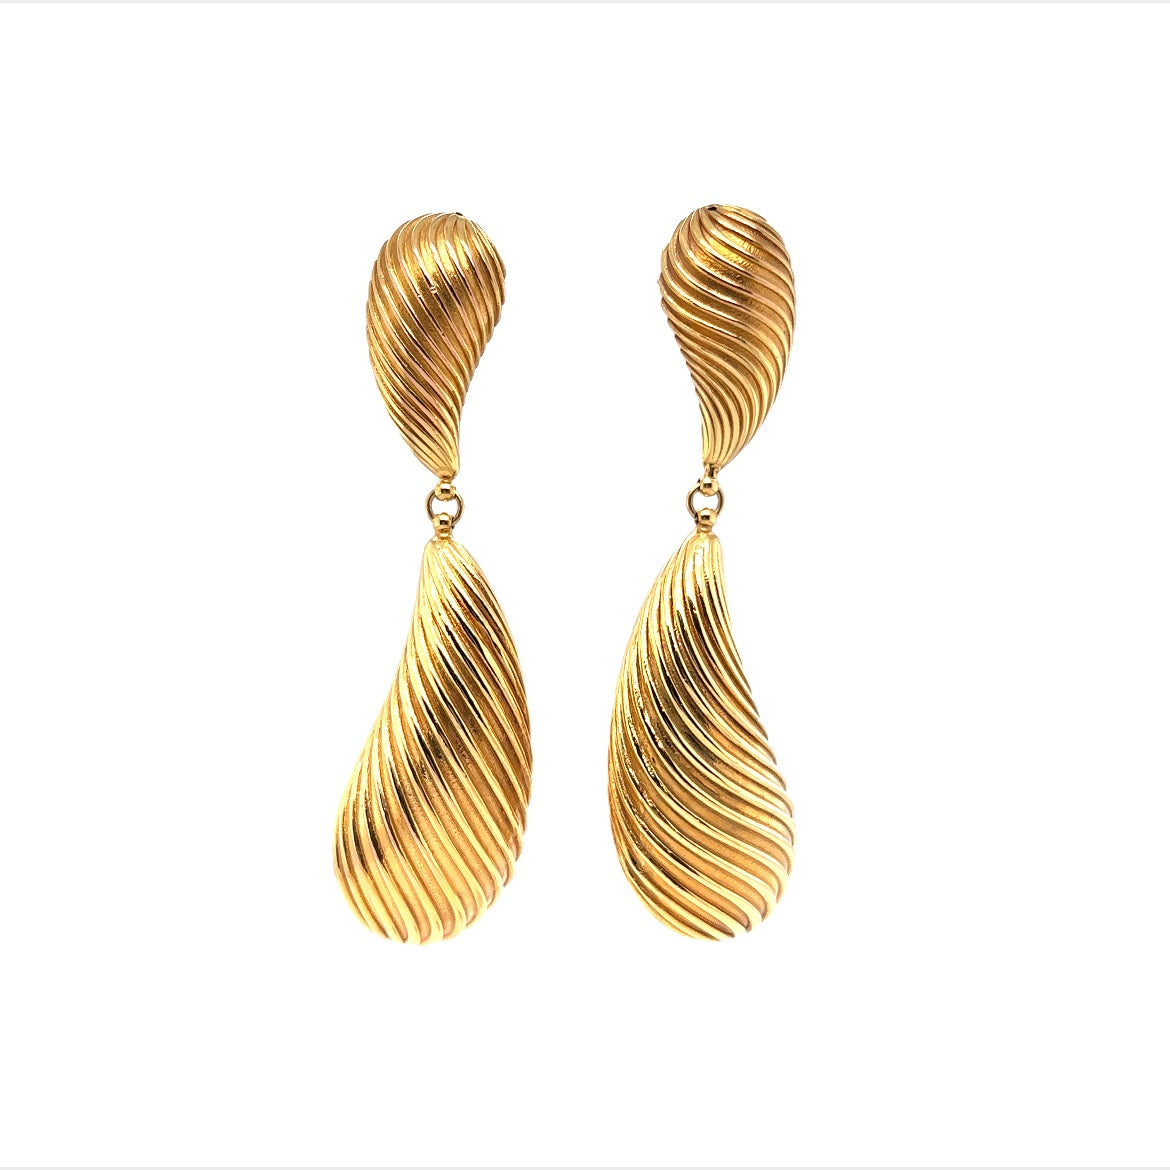 Unique Teardrop Dangle Earrings in 18K Yellow Gold